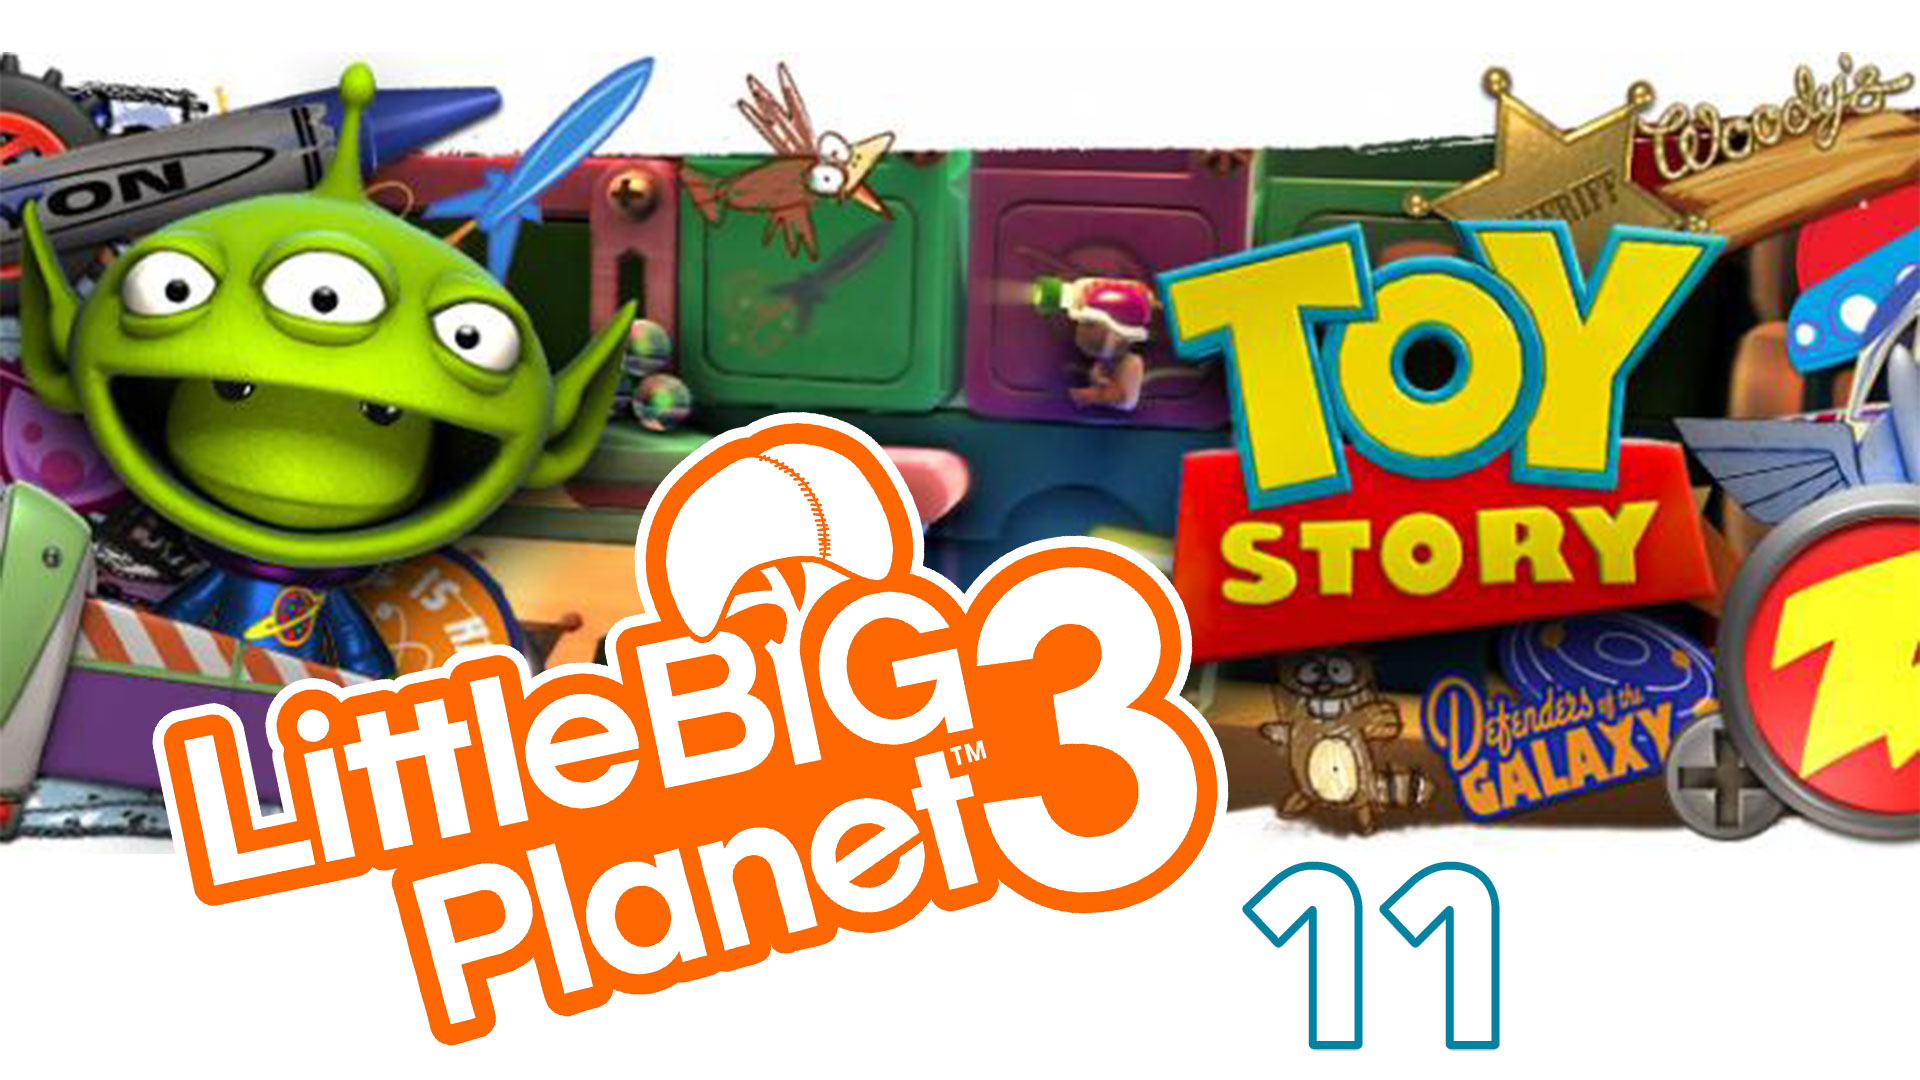 LittleBigPlanet 3 - Сезон 2 - Кооператив - История игрушек ч. 2 - Прохождение [#11] | PS4 (2016 г.)